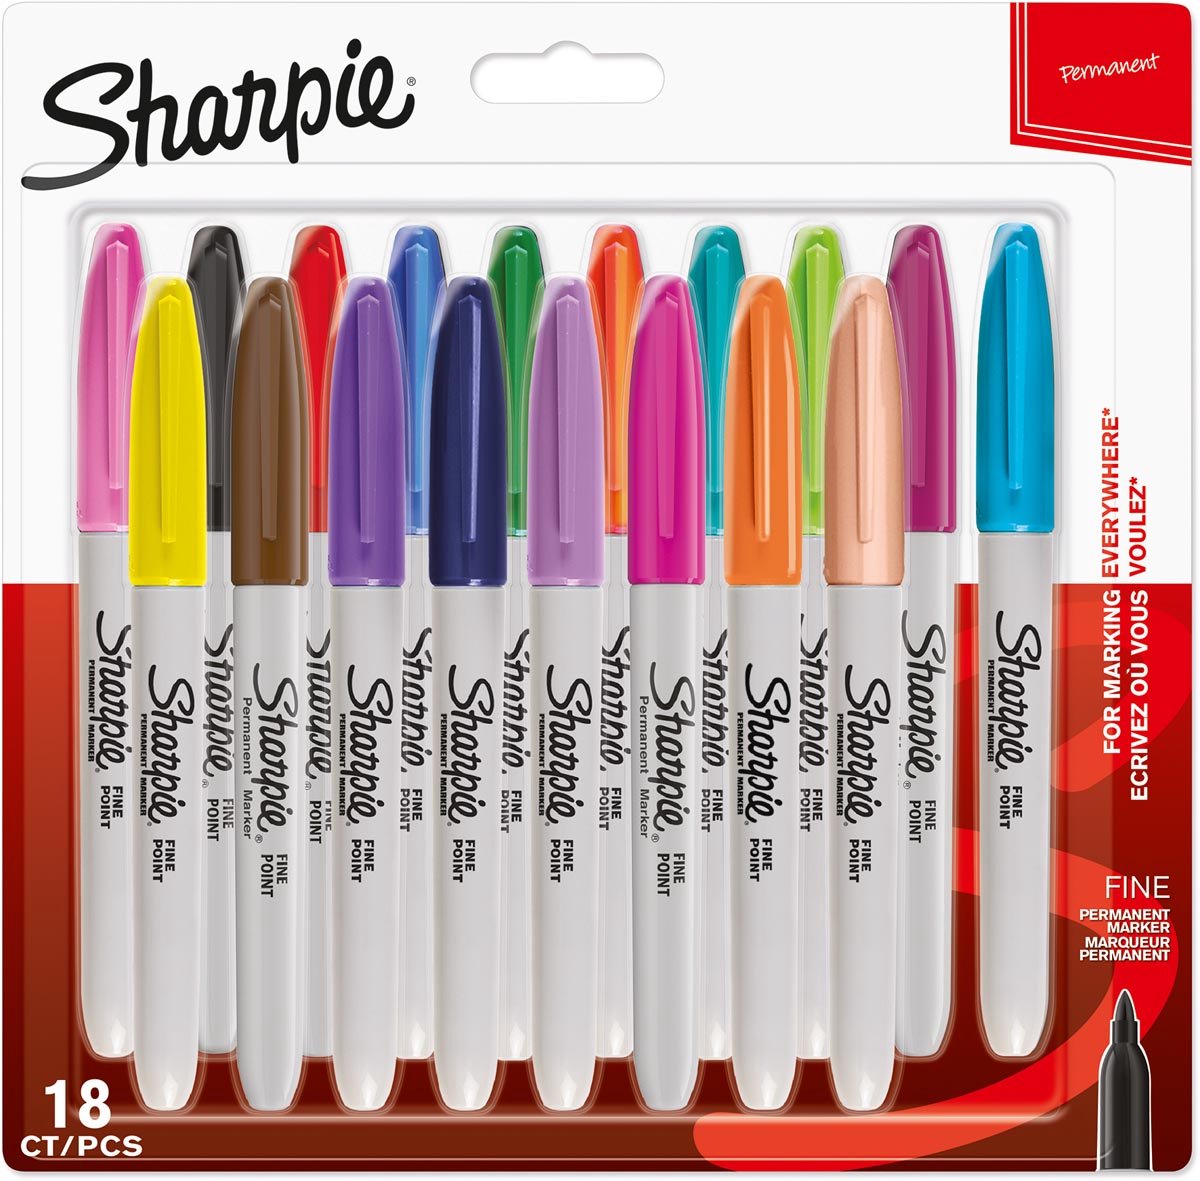 Sharpie permanente markers | Fijne punt | Diverse vrolijke kleuren | 18 stuks